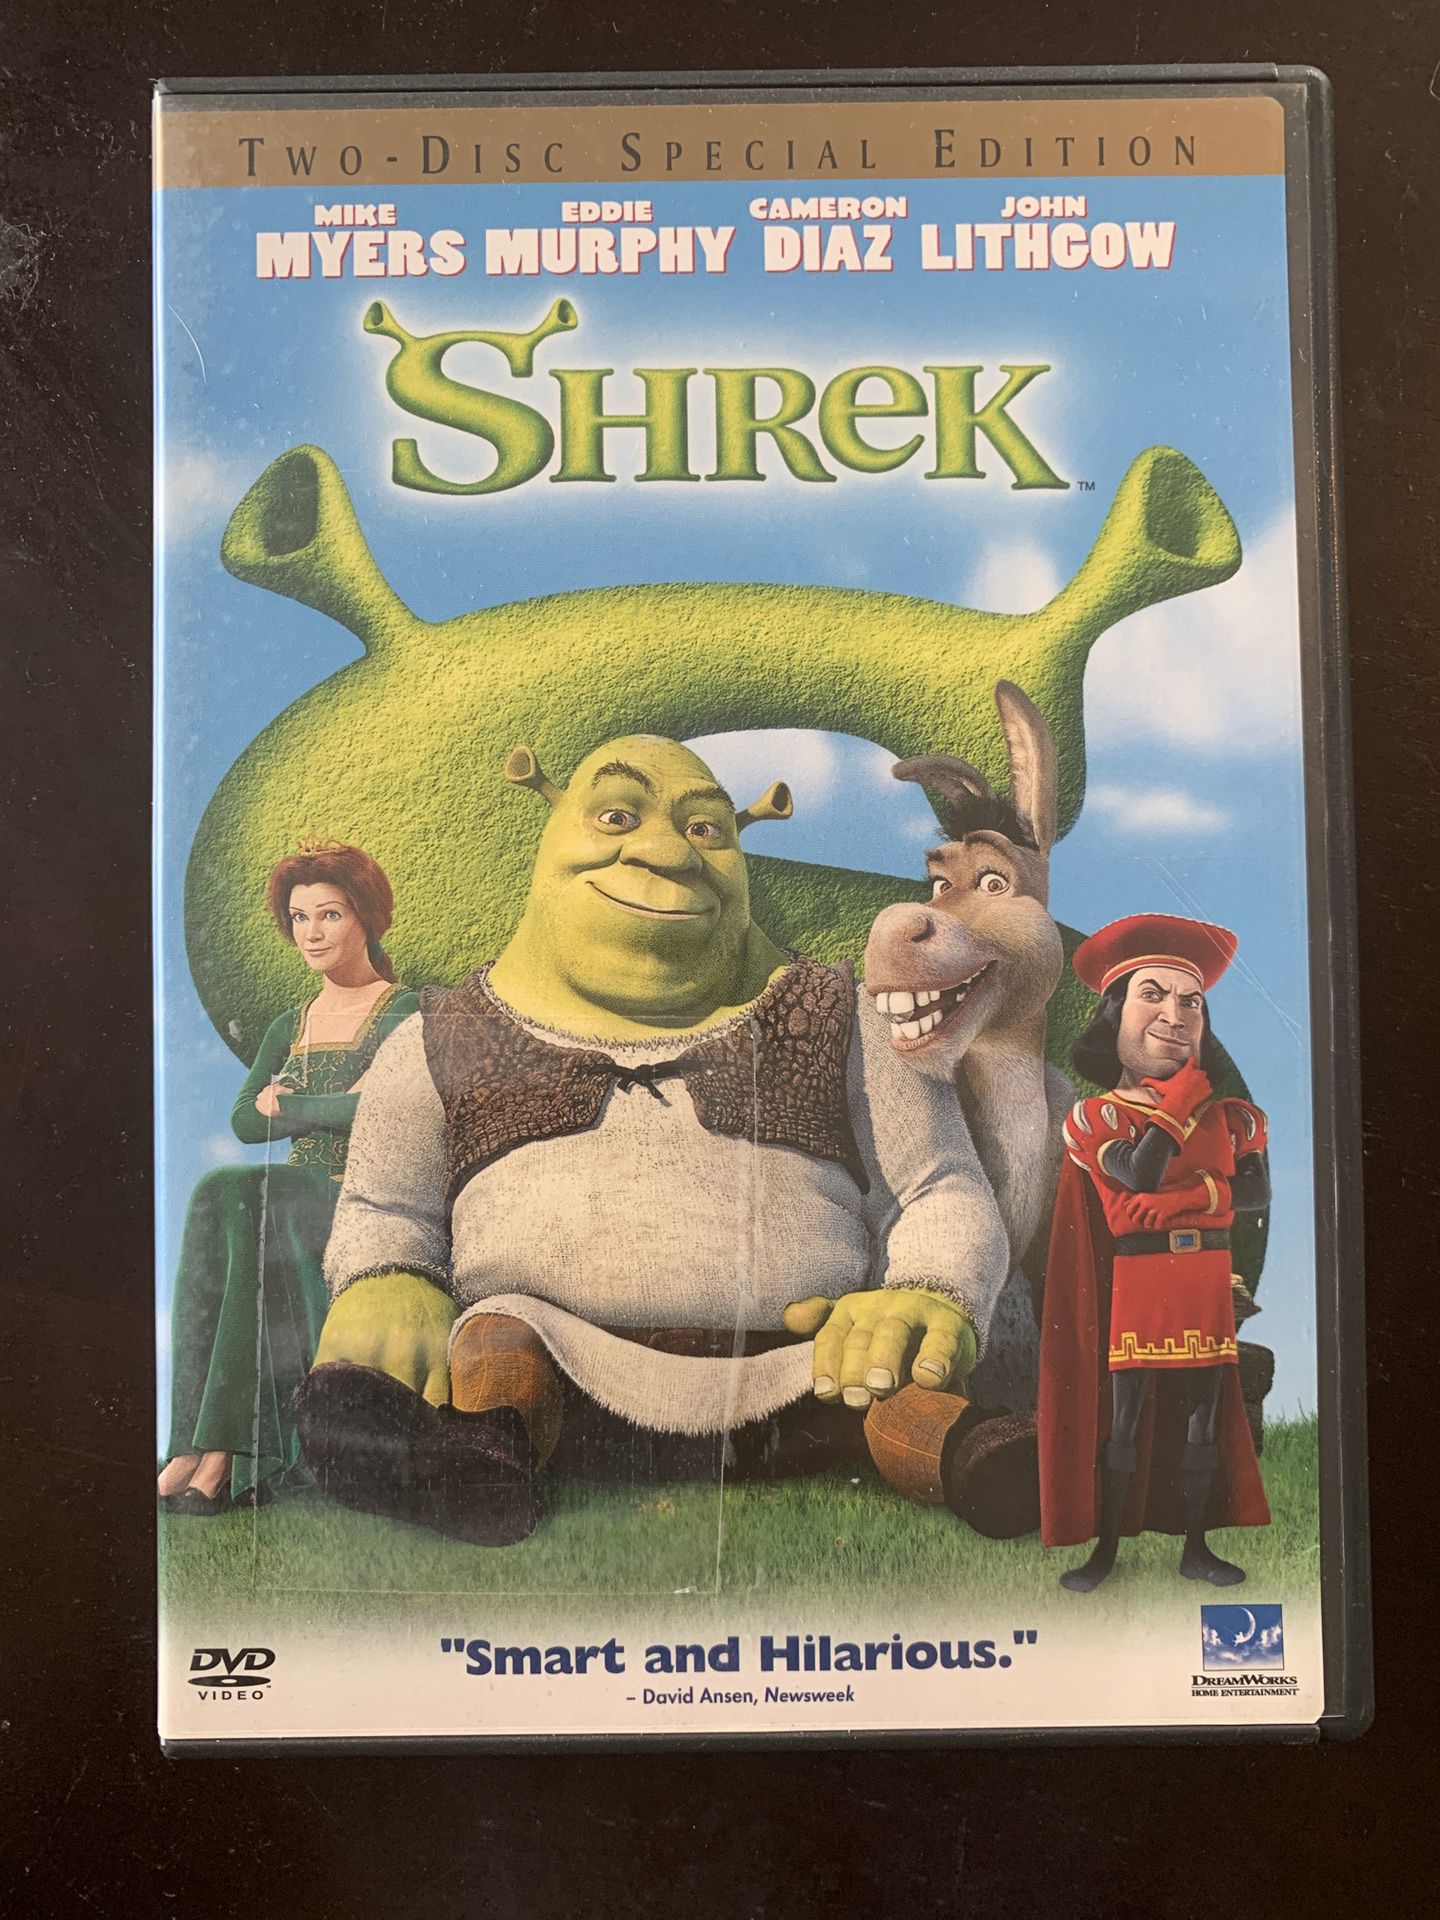 Dreamworks Shrek DVD Set